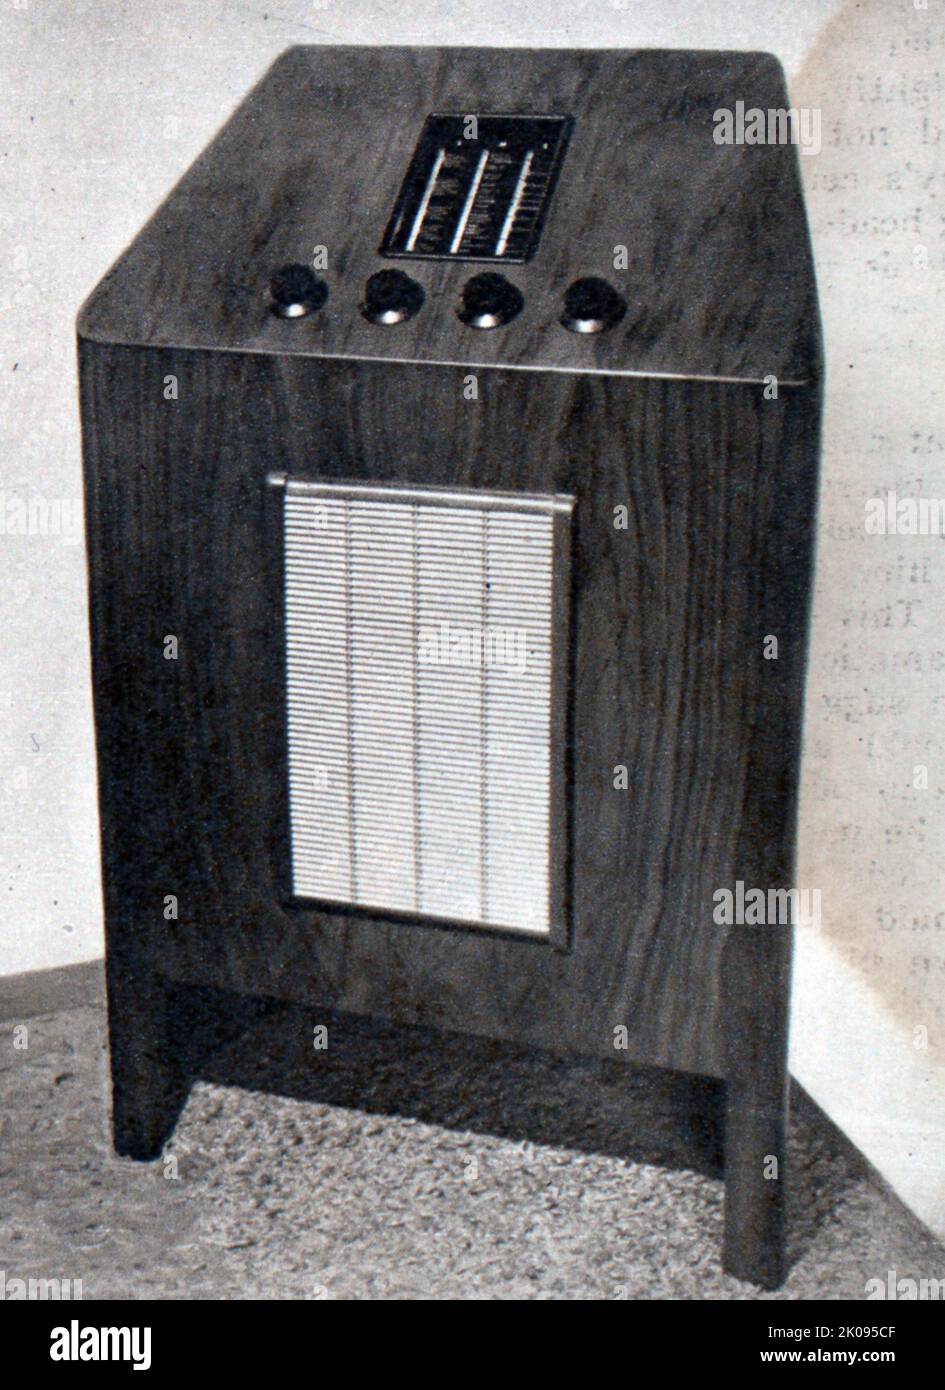 Radio console receiver by Ferranti. Stock Photo